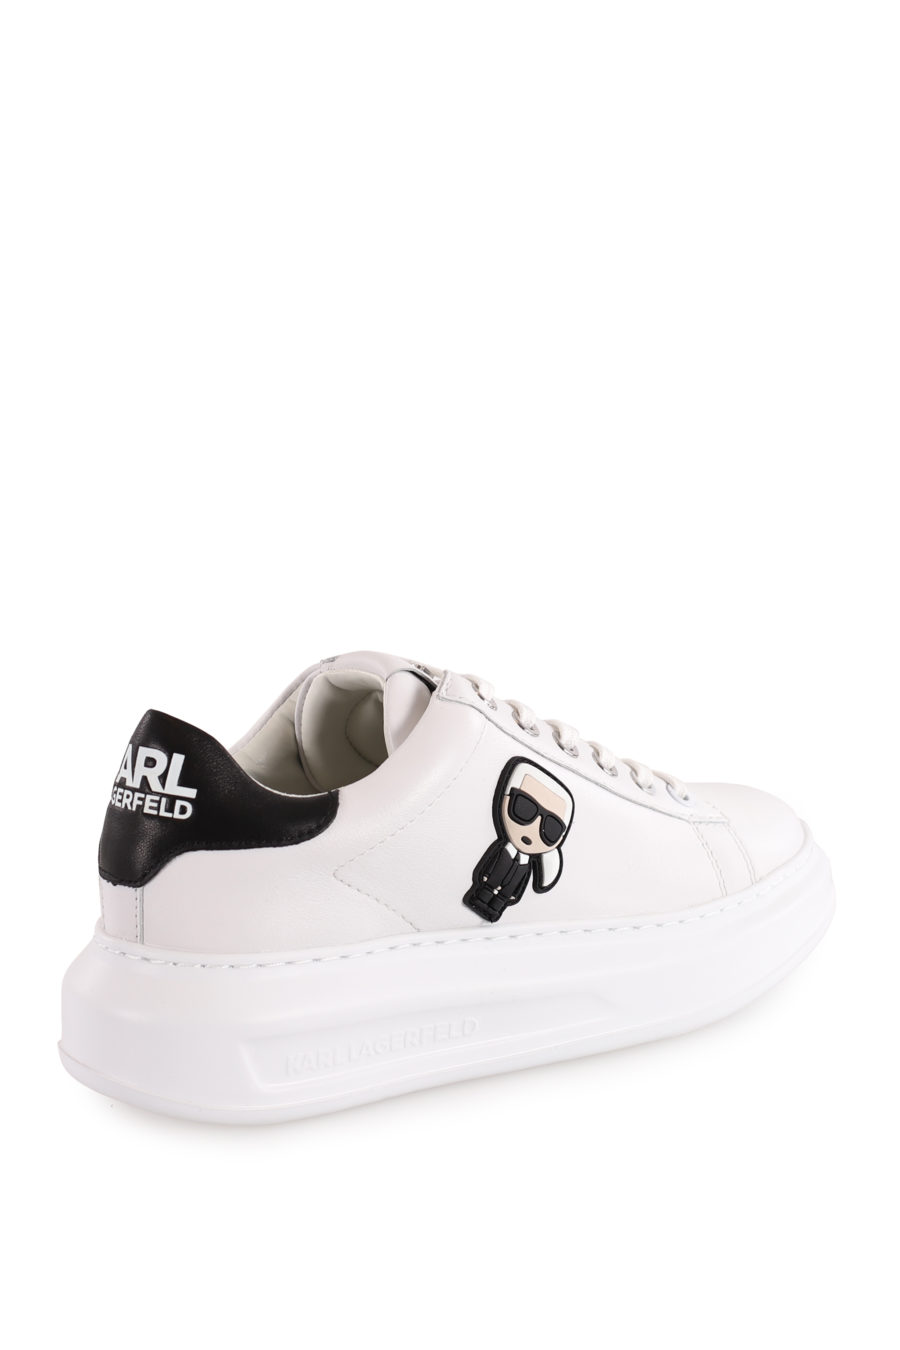 Zapatillas blancas con logotipo "Karl Ikonic" - 723278cfb29c00650080f6f65ac7a65944318cef